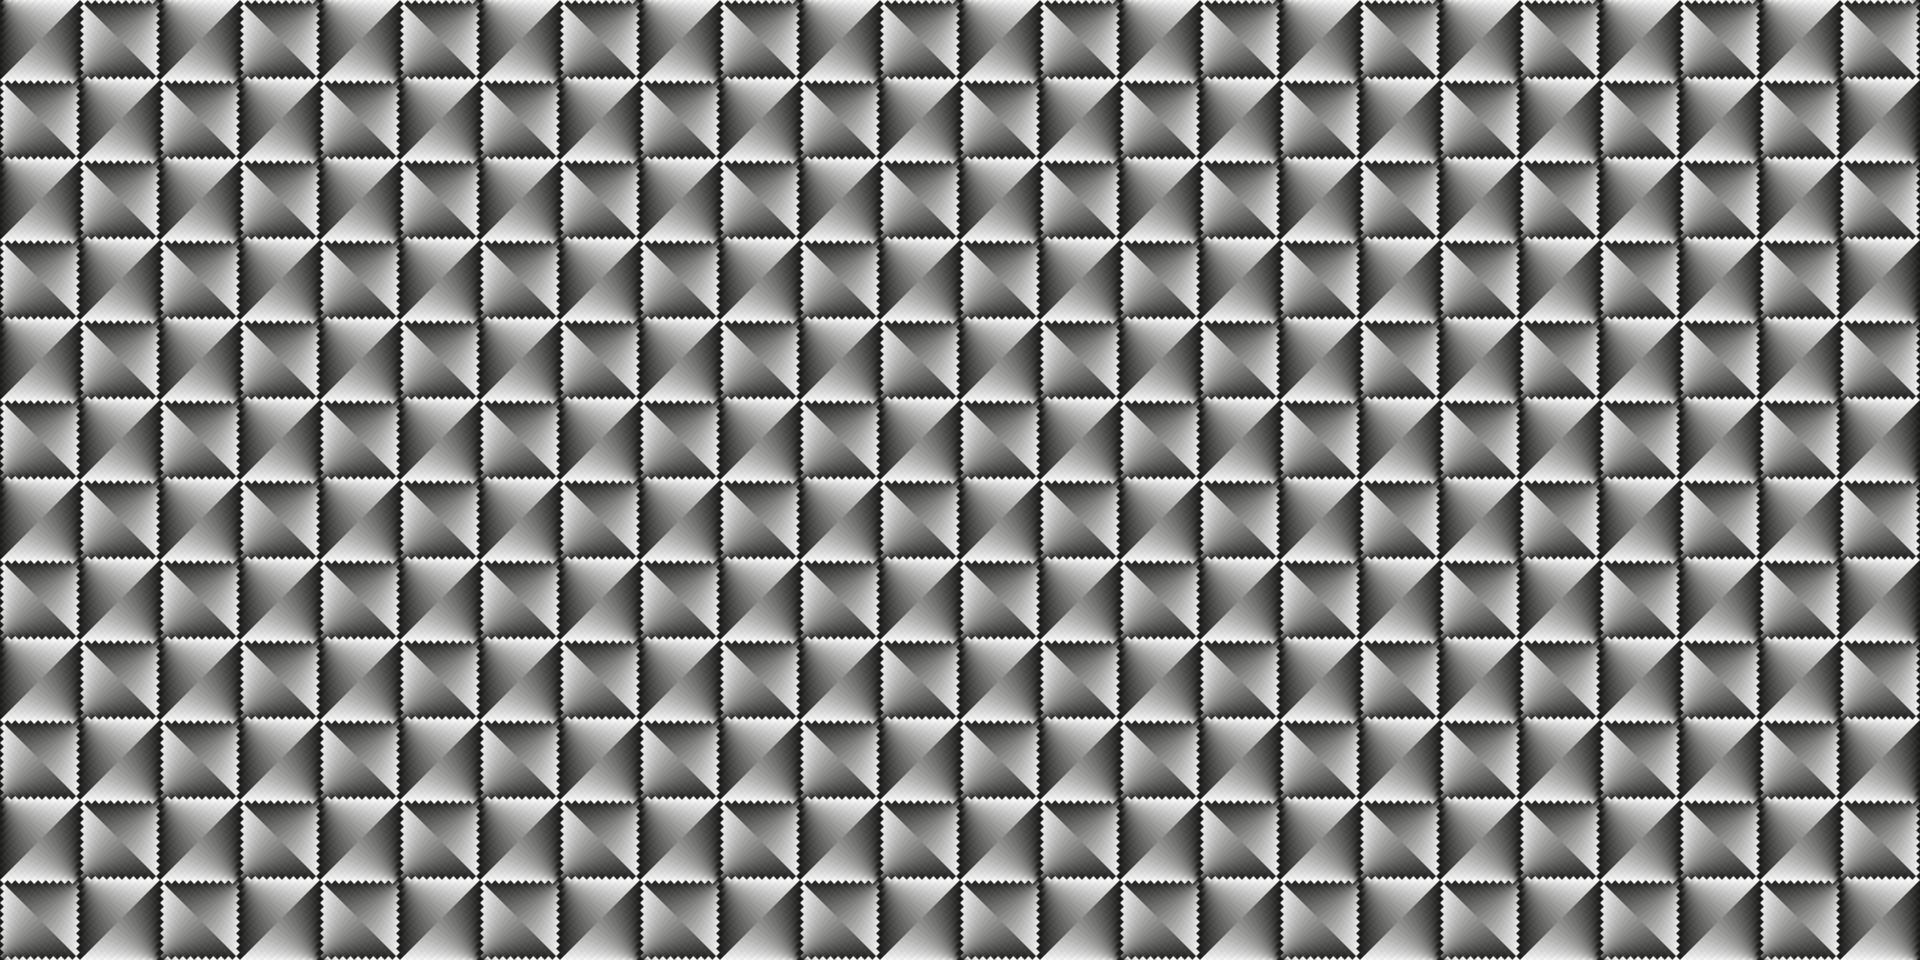 mörk svart mosaik- abstrakt sömlös geometrisk rutnät bakgrund vektor